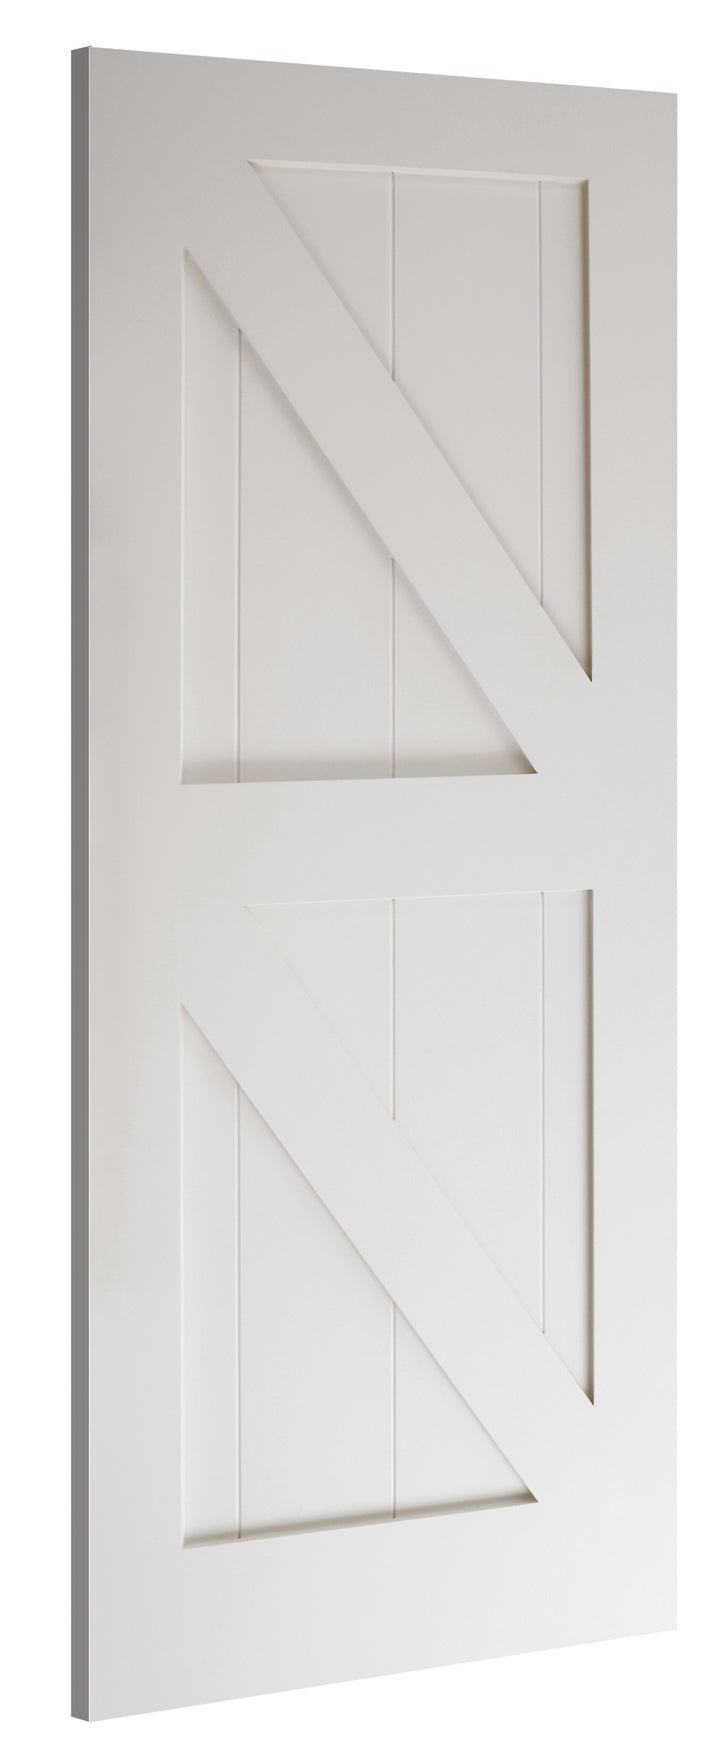 Deanta HP36 White Primed Door - Solid